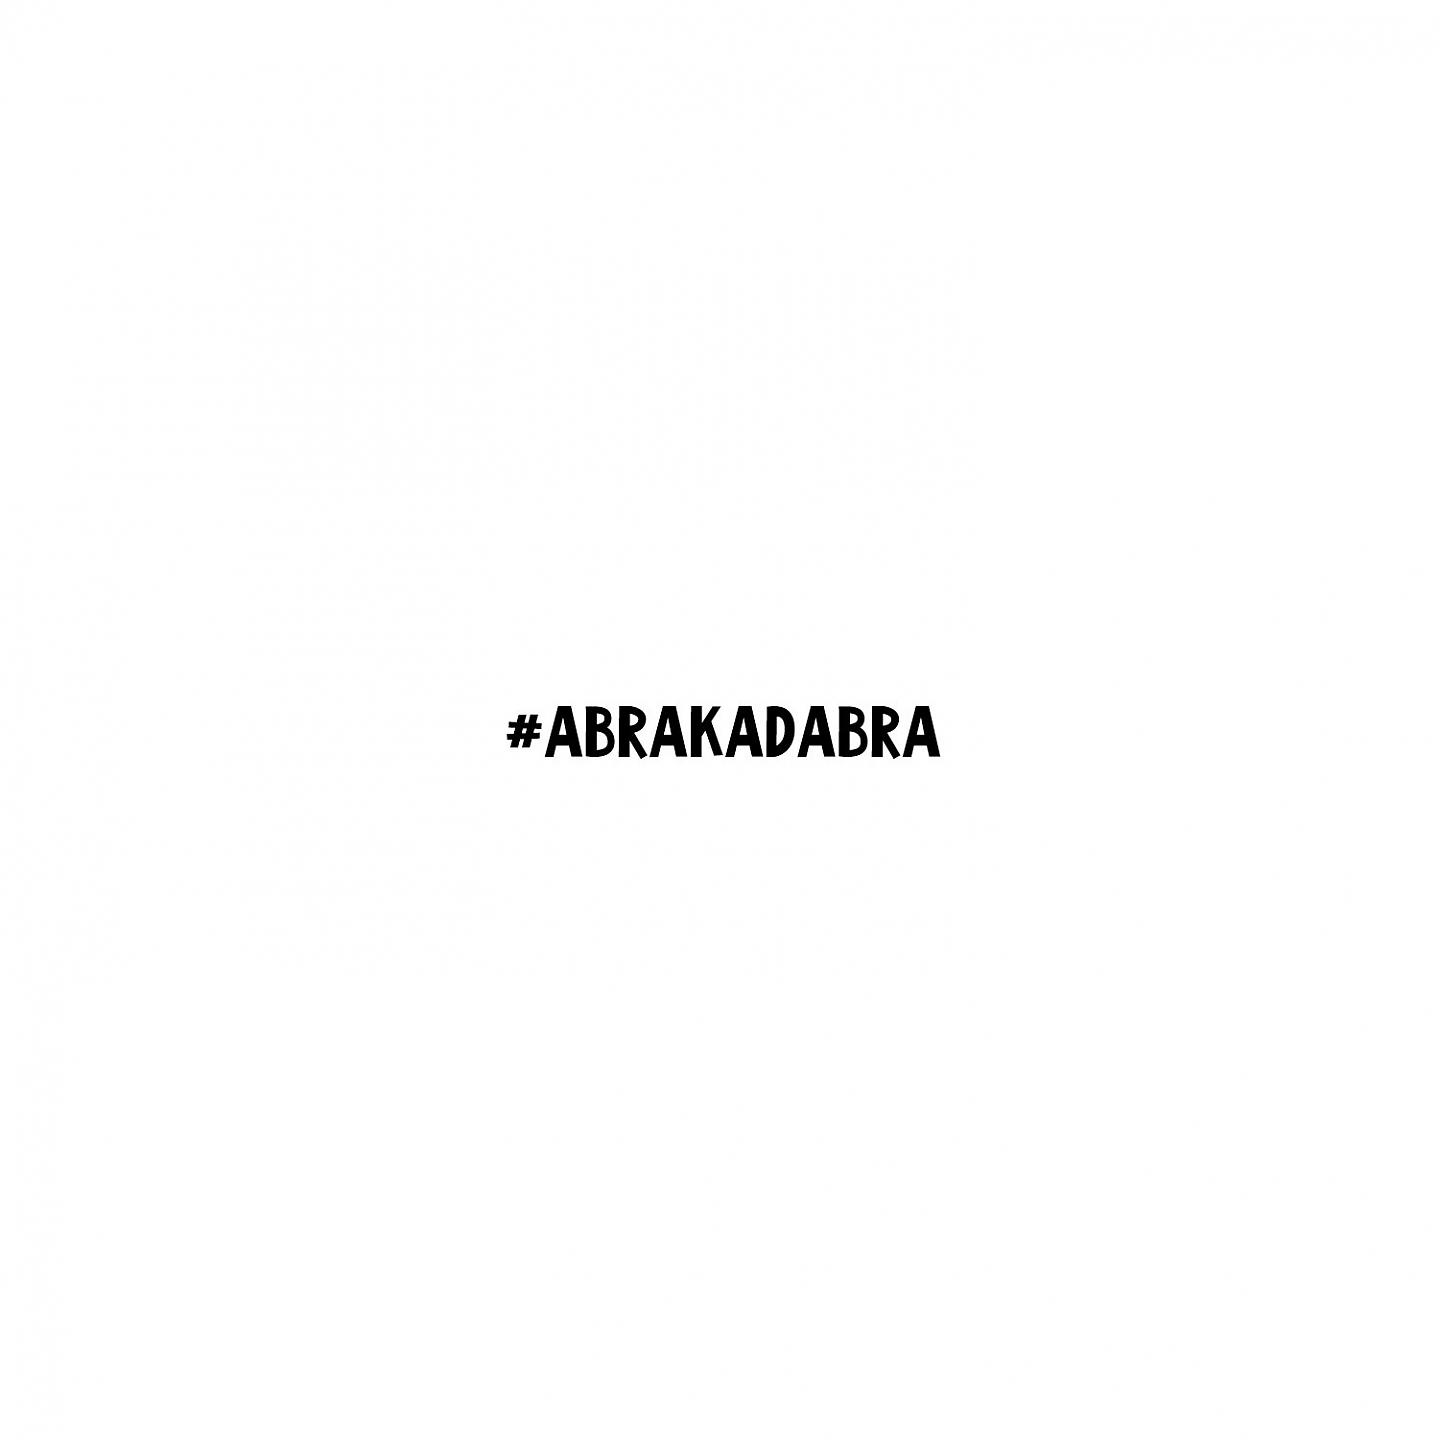 Murovei - Abrakadabra скачать ремикс 